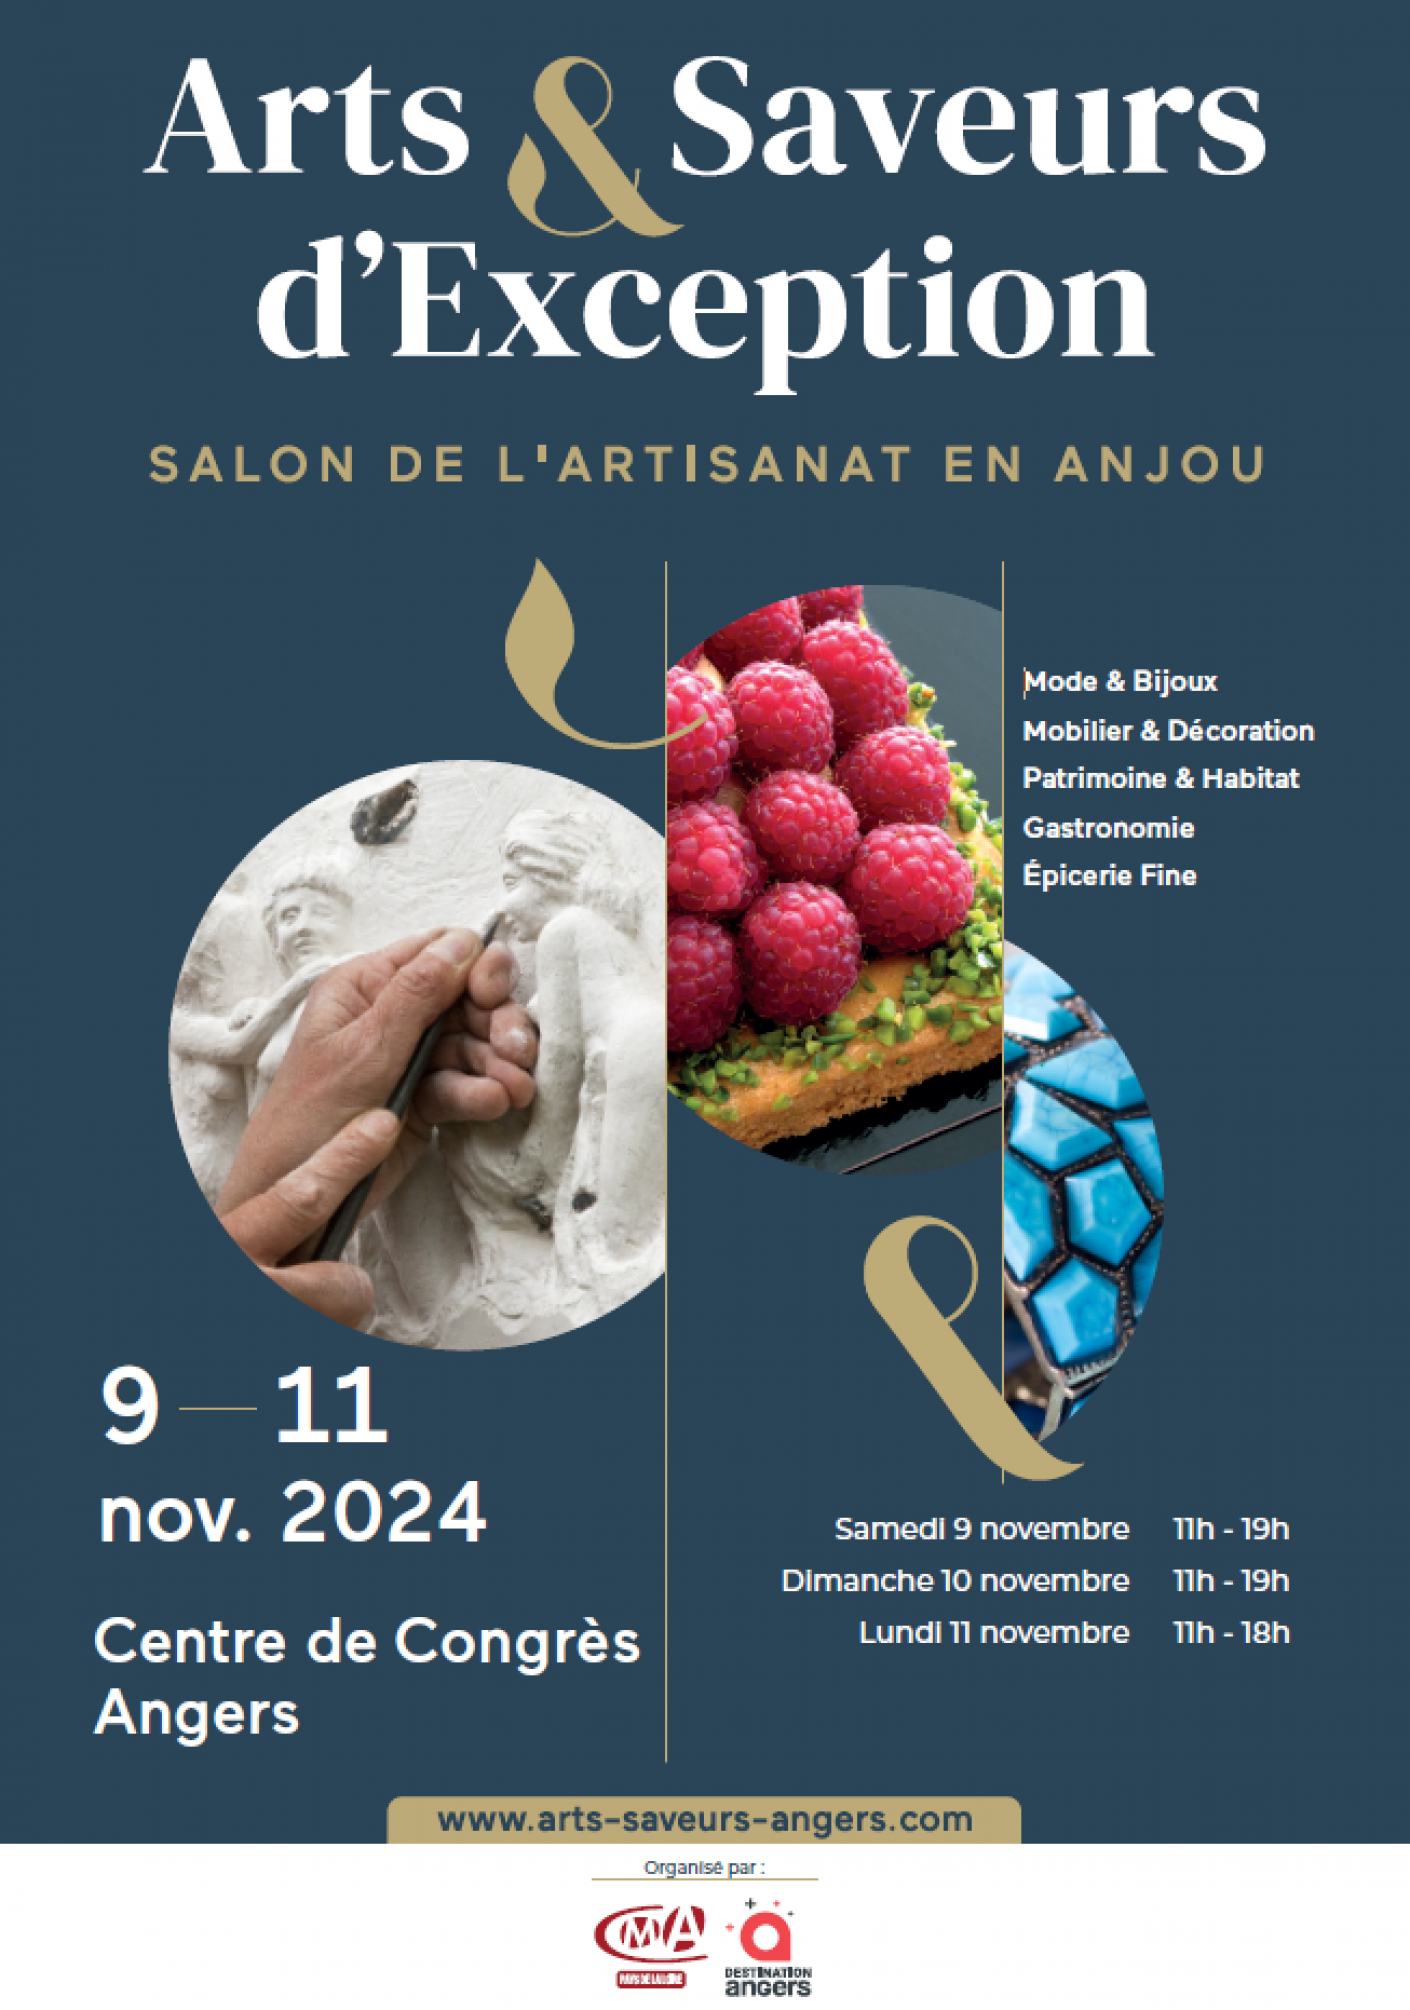 Salon "Arts & Saveurs d'Exception" à Angers - Du 9 au 11 novembre 2024